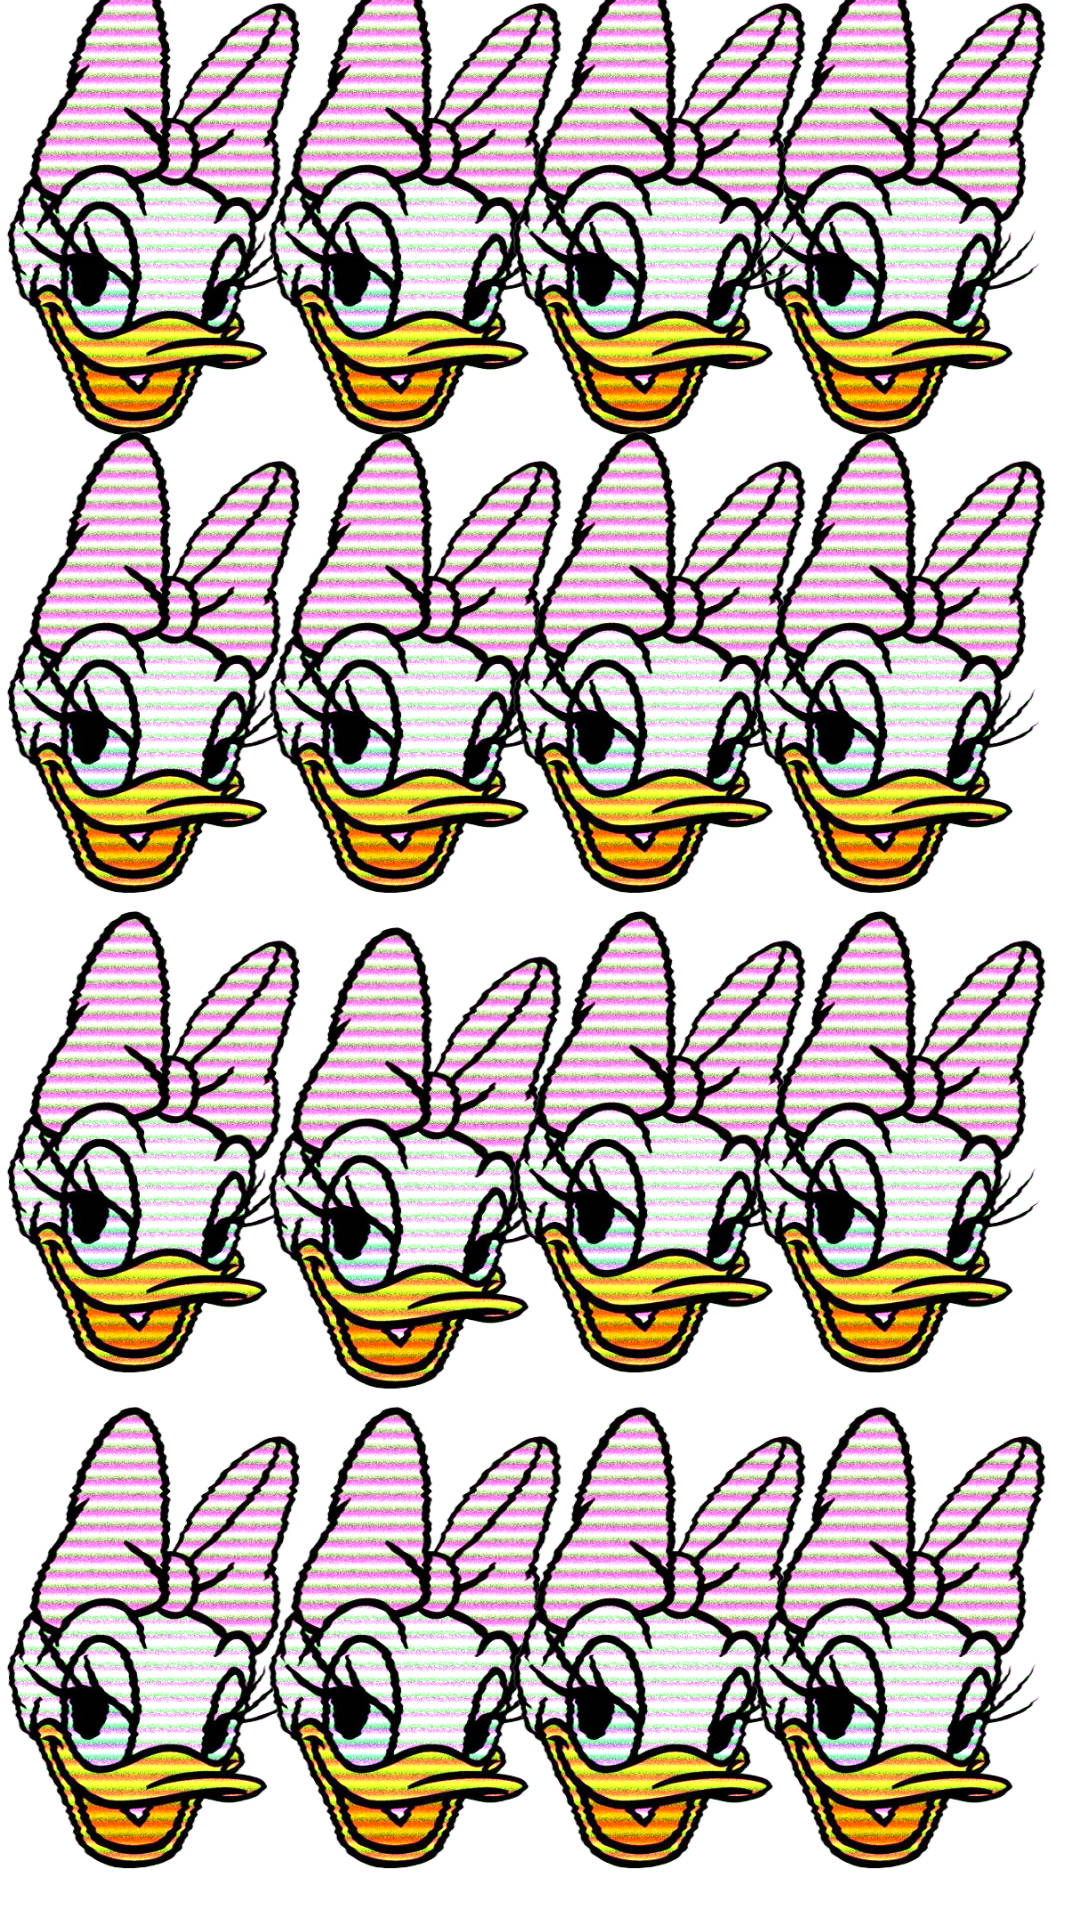 Retro Daisy Duck Hoveder Wallpaper